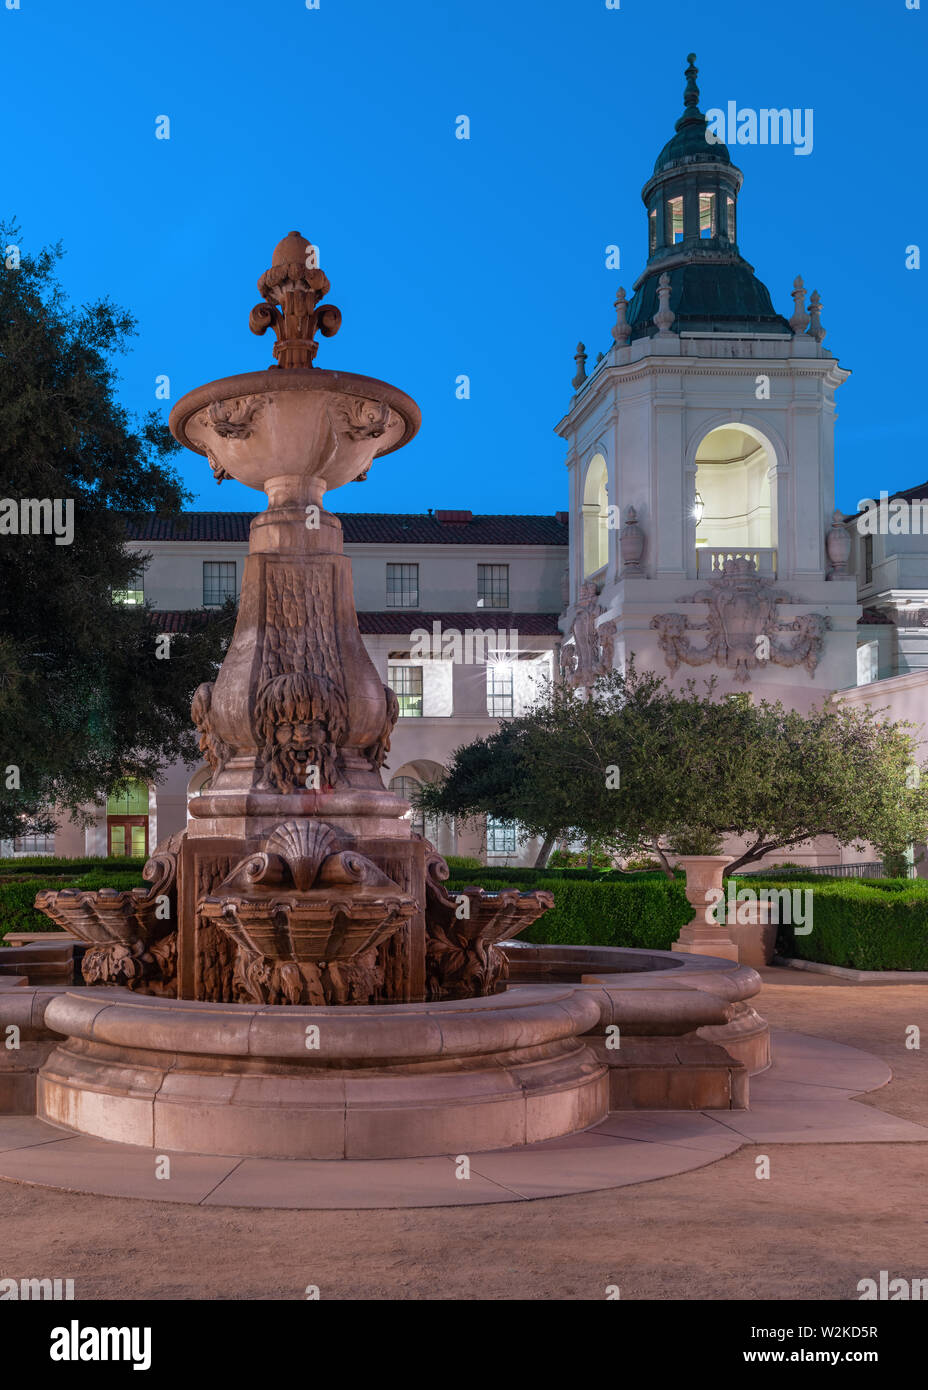 Cour de l'hôtel de ville de Pasadena montrant la fontaine et l'une des plus petites tours. Montré dans la ville de Pasadena, Californie, au crépuscule. Banque D'Images